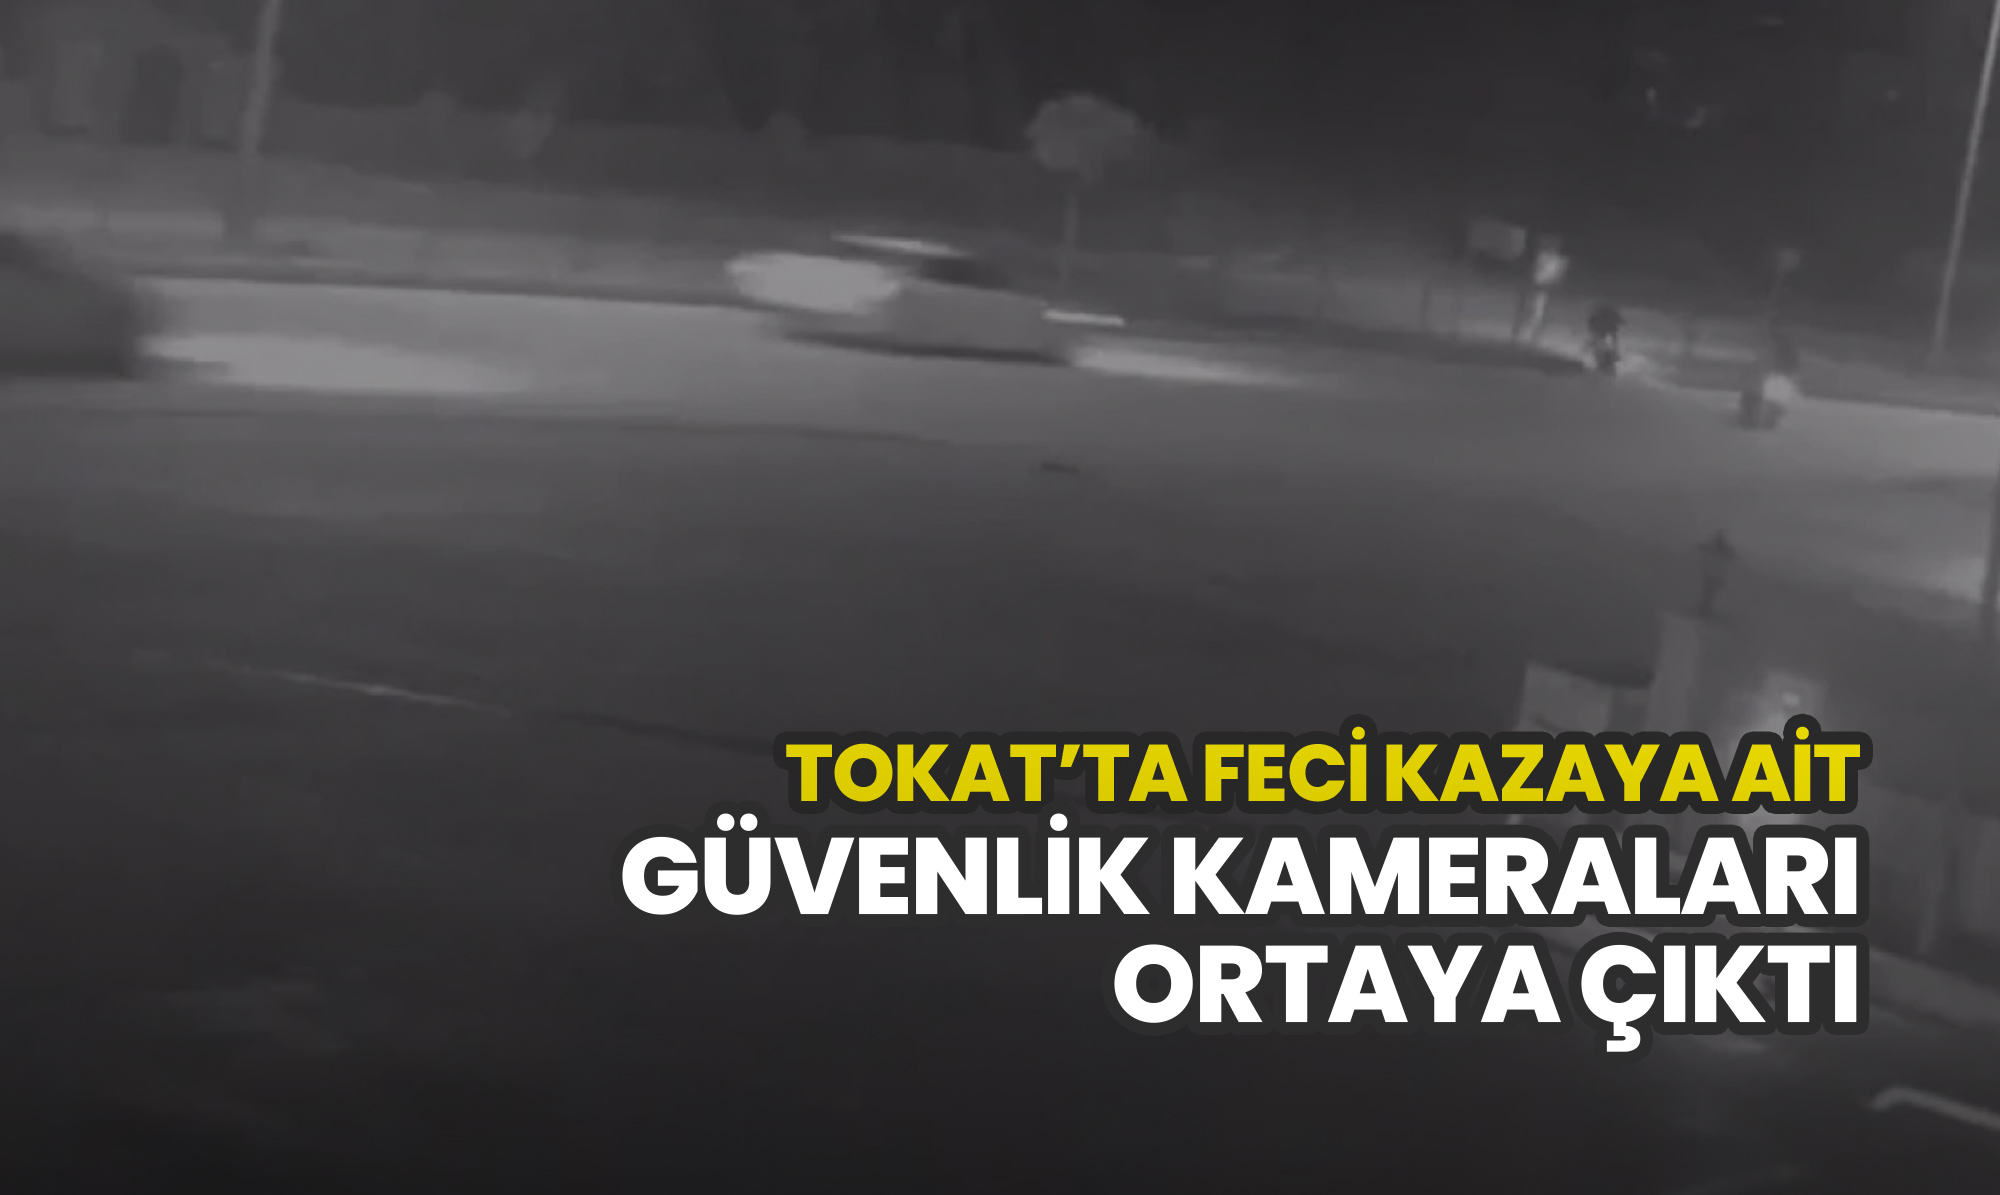 Tokat’ta feci kazaya ait güvenlik kameraları ortaya çıktı